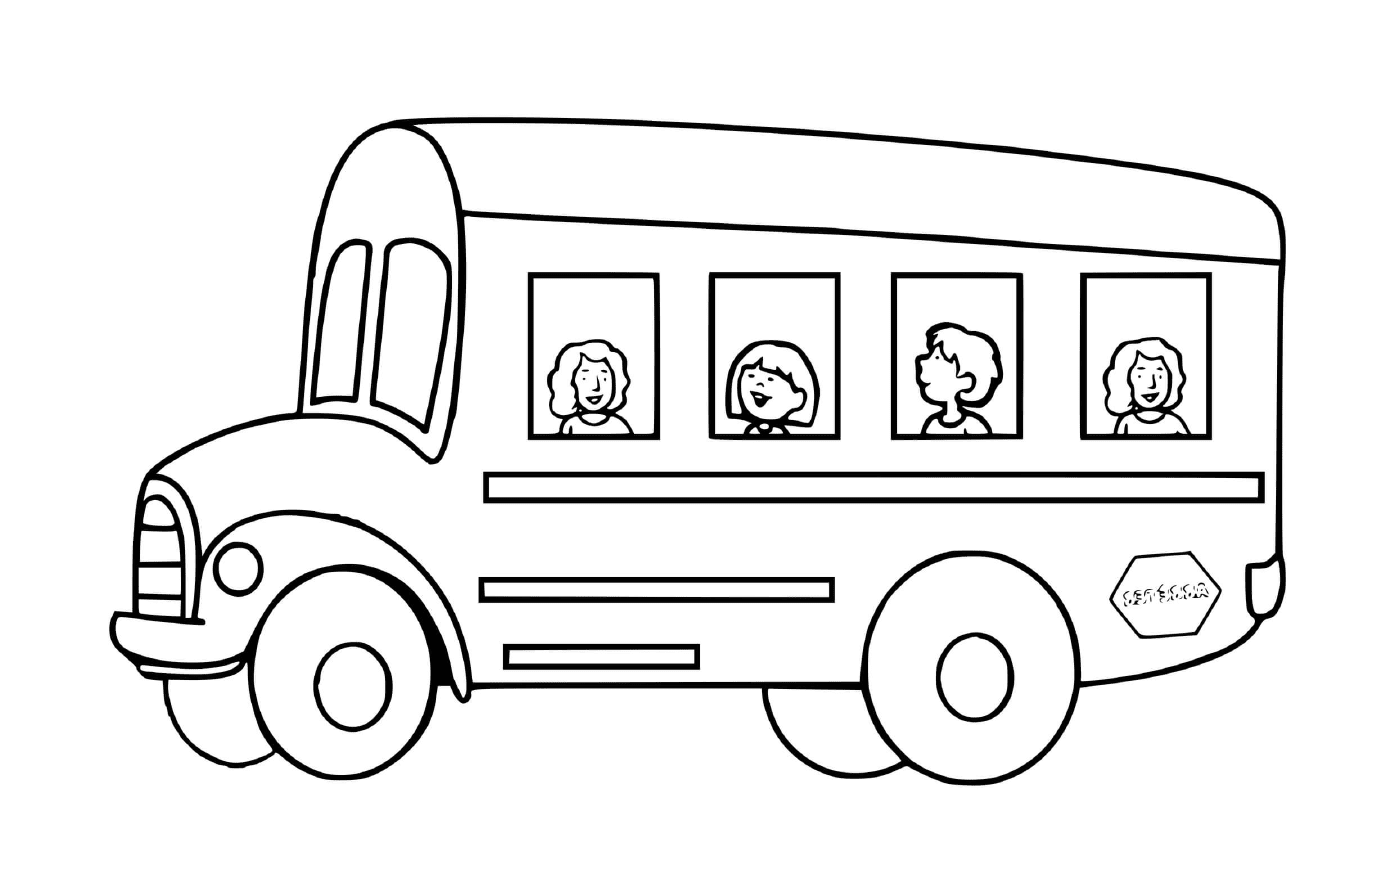   Transport scolaire des enfants : l'autobus 